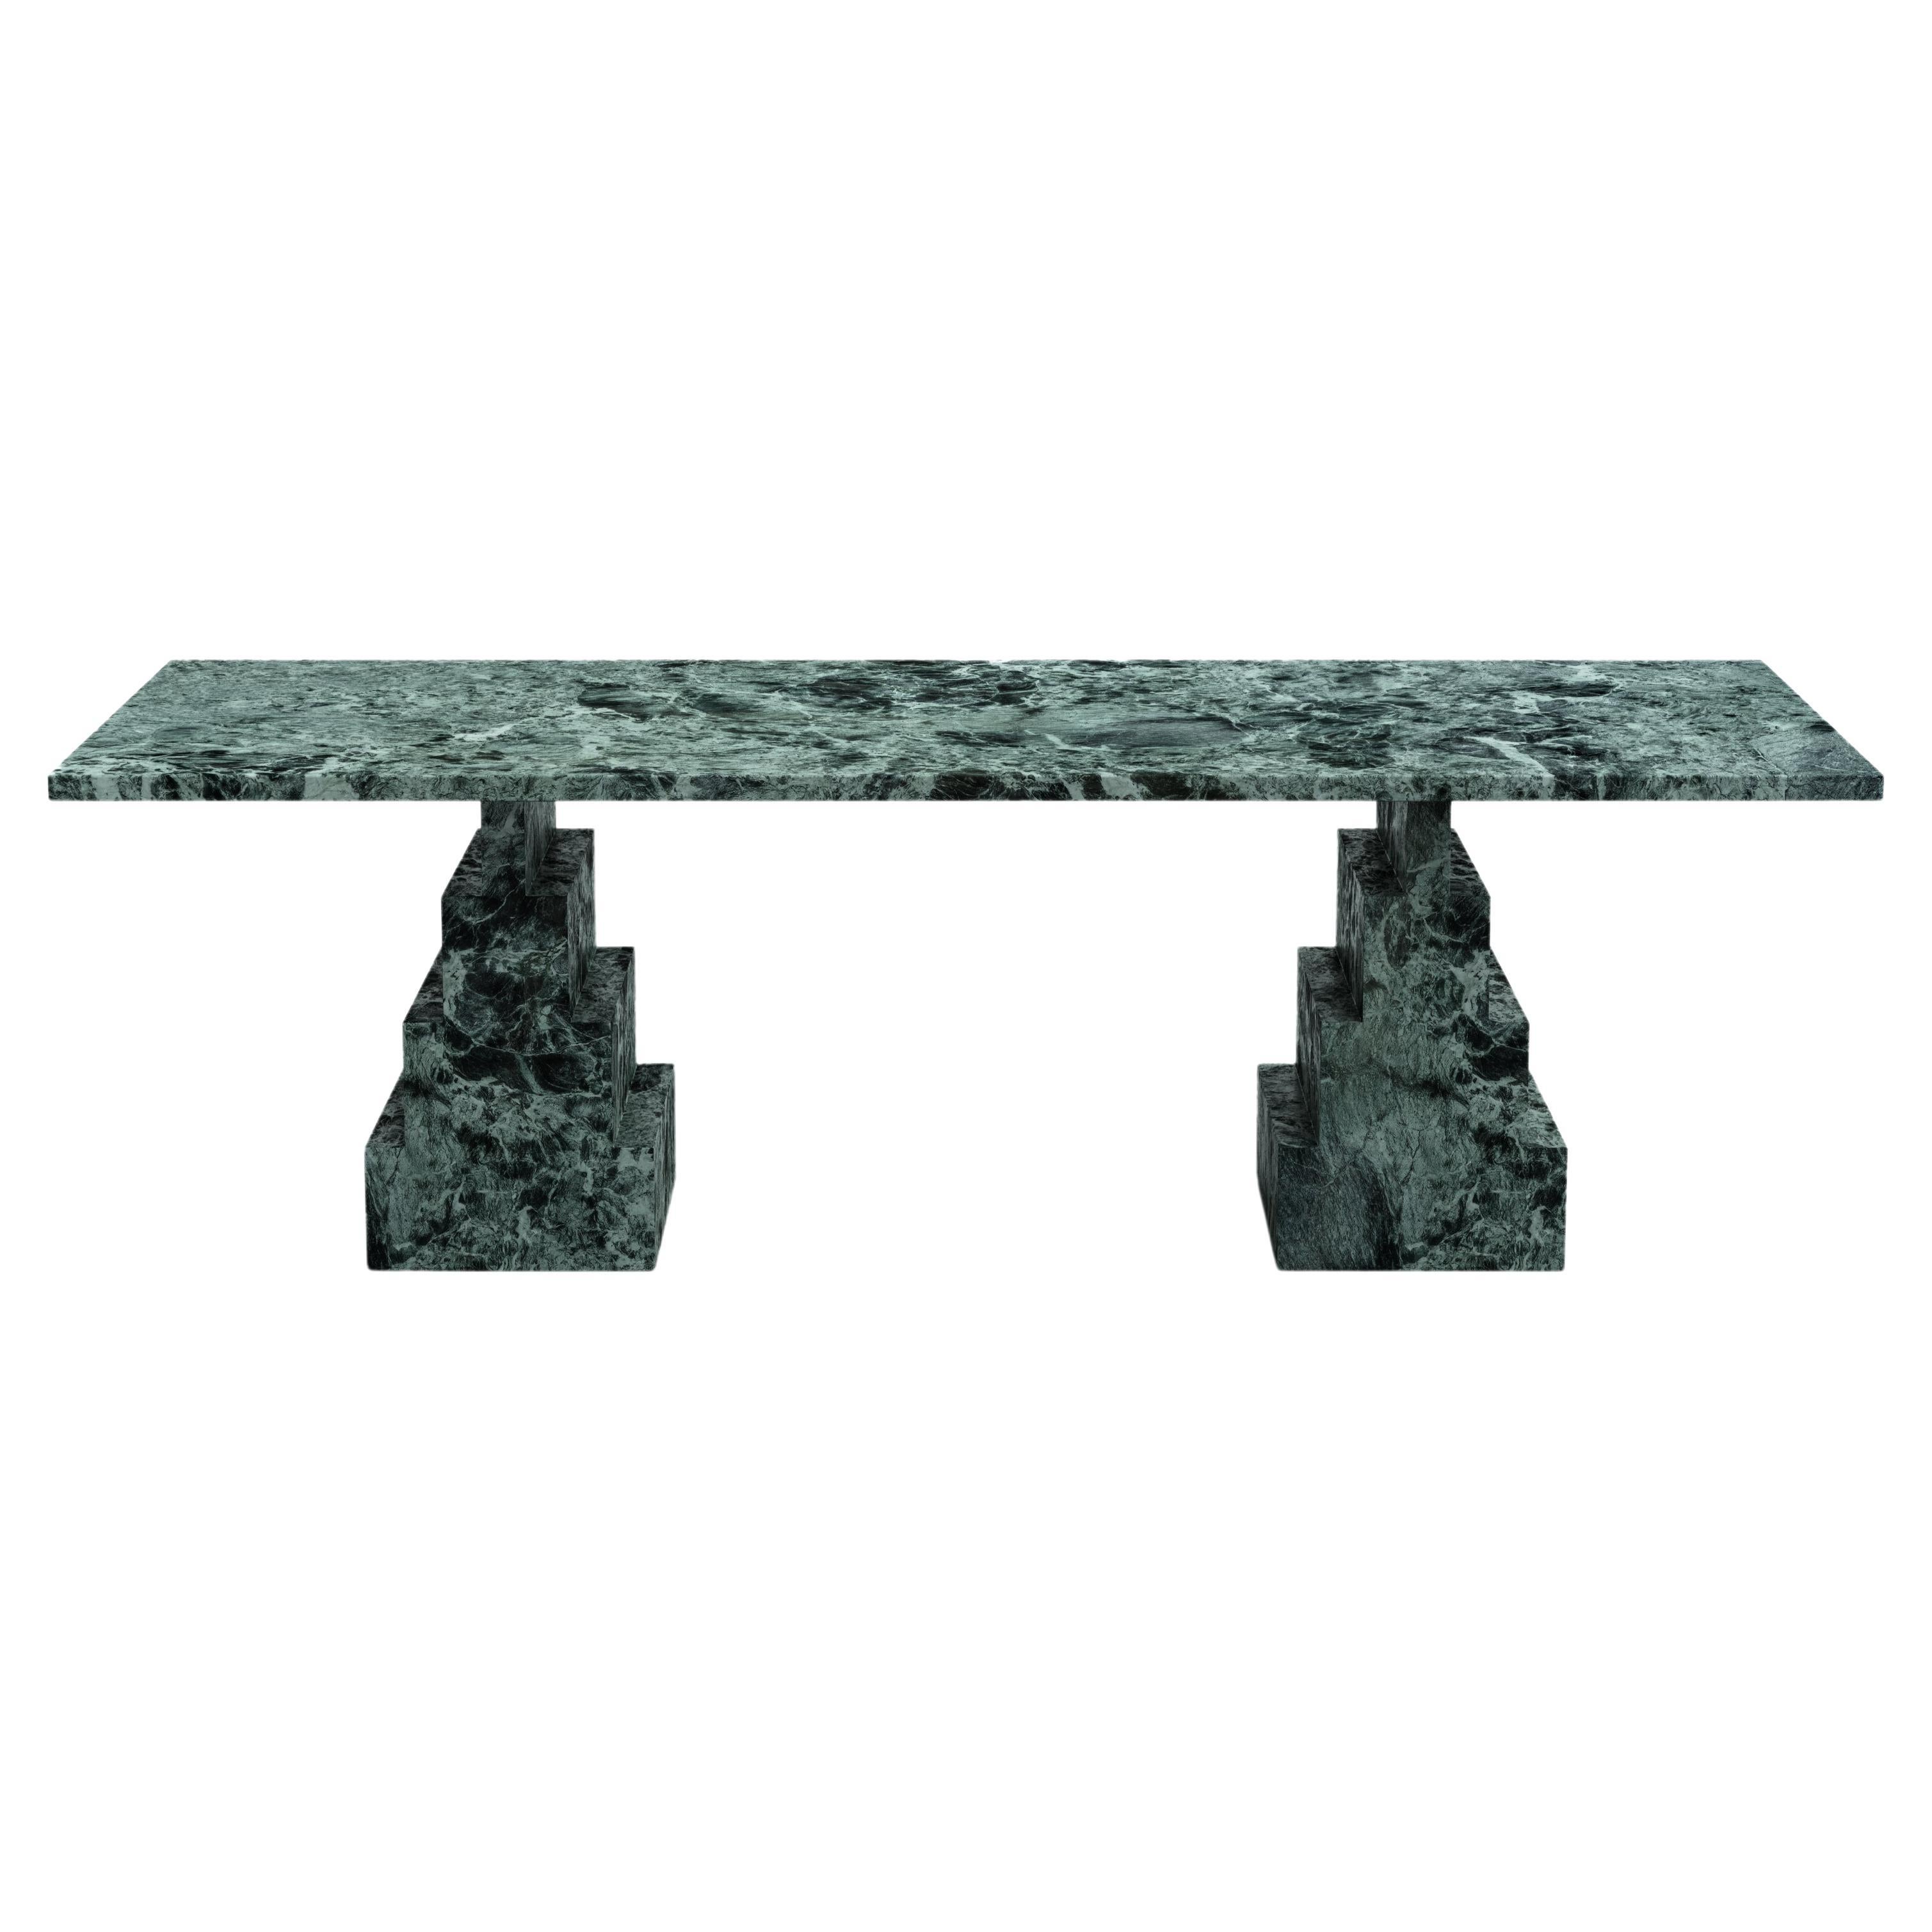 Table de salle à manger NORDST NIKO, marbre vert italien, design moderne danois, nouveau